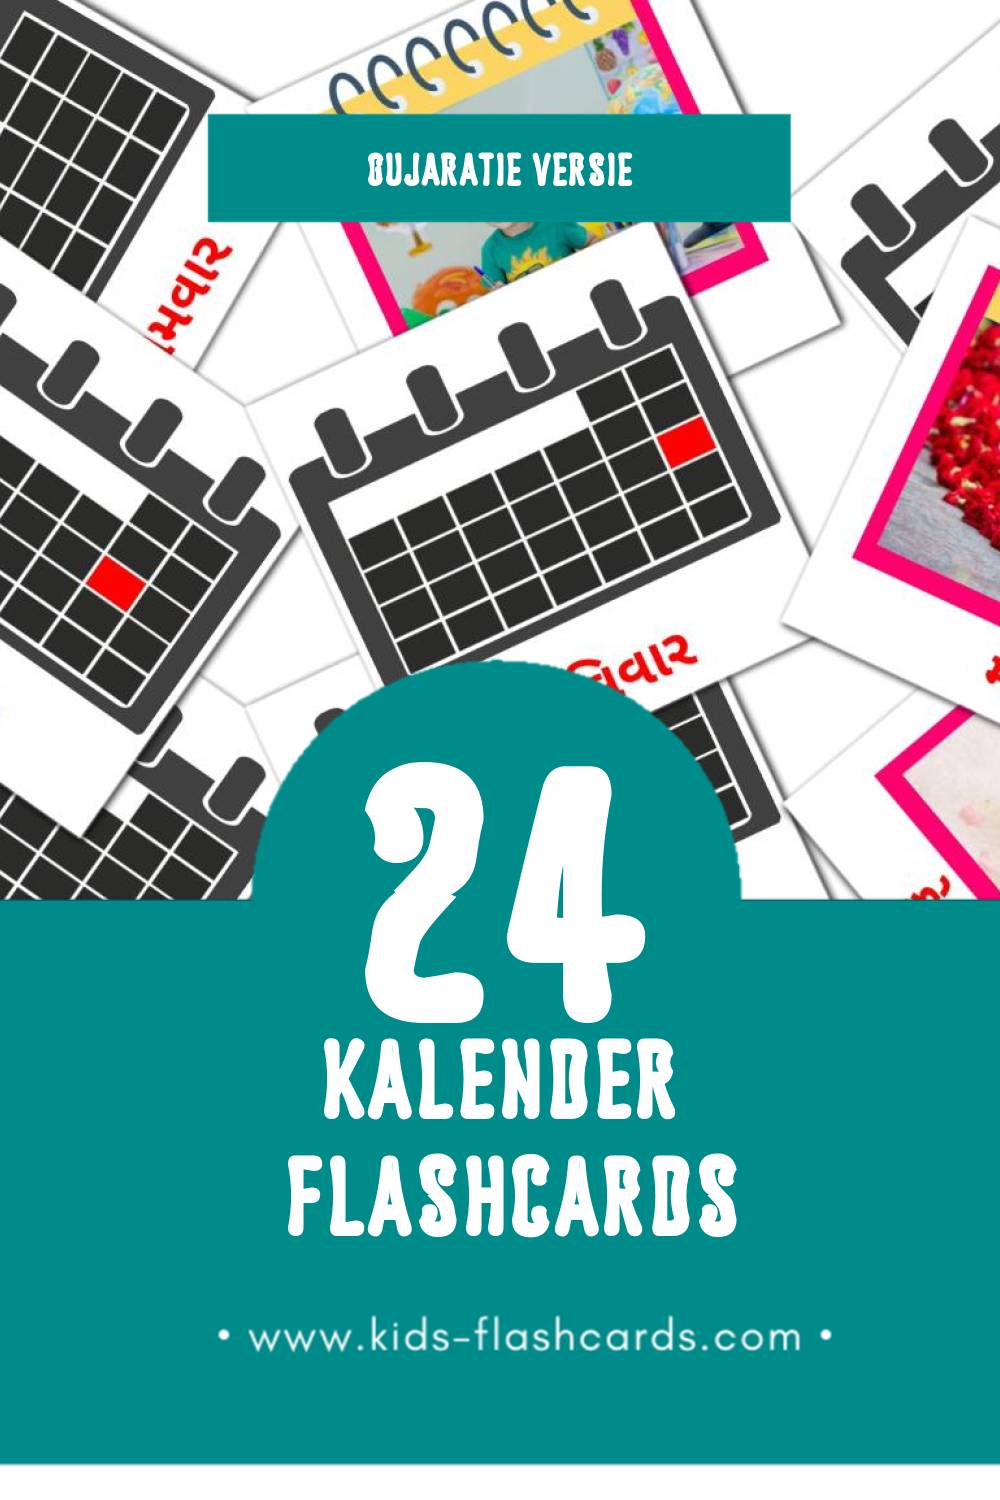 Visuele કેલેન્ડર Flashcards voor Kleuters (24 kaarten in het Gujarati)